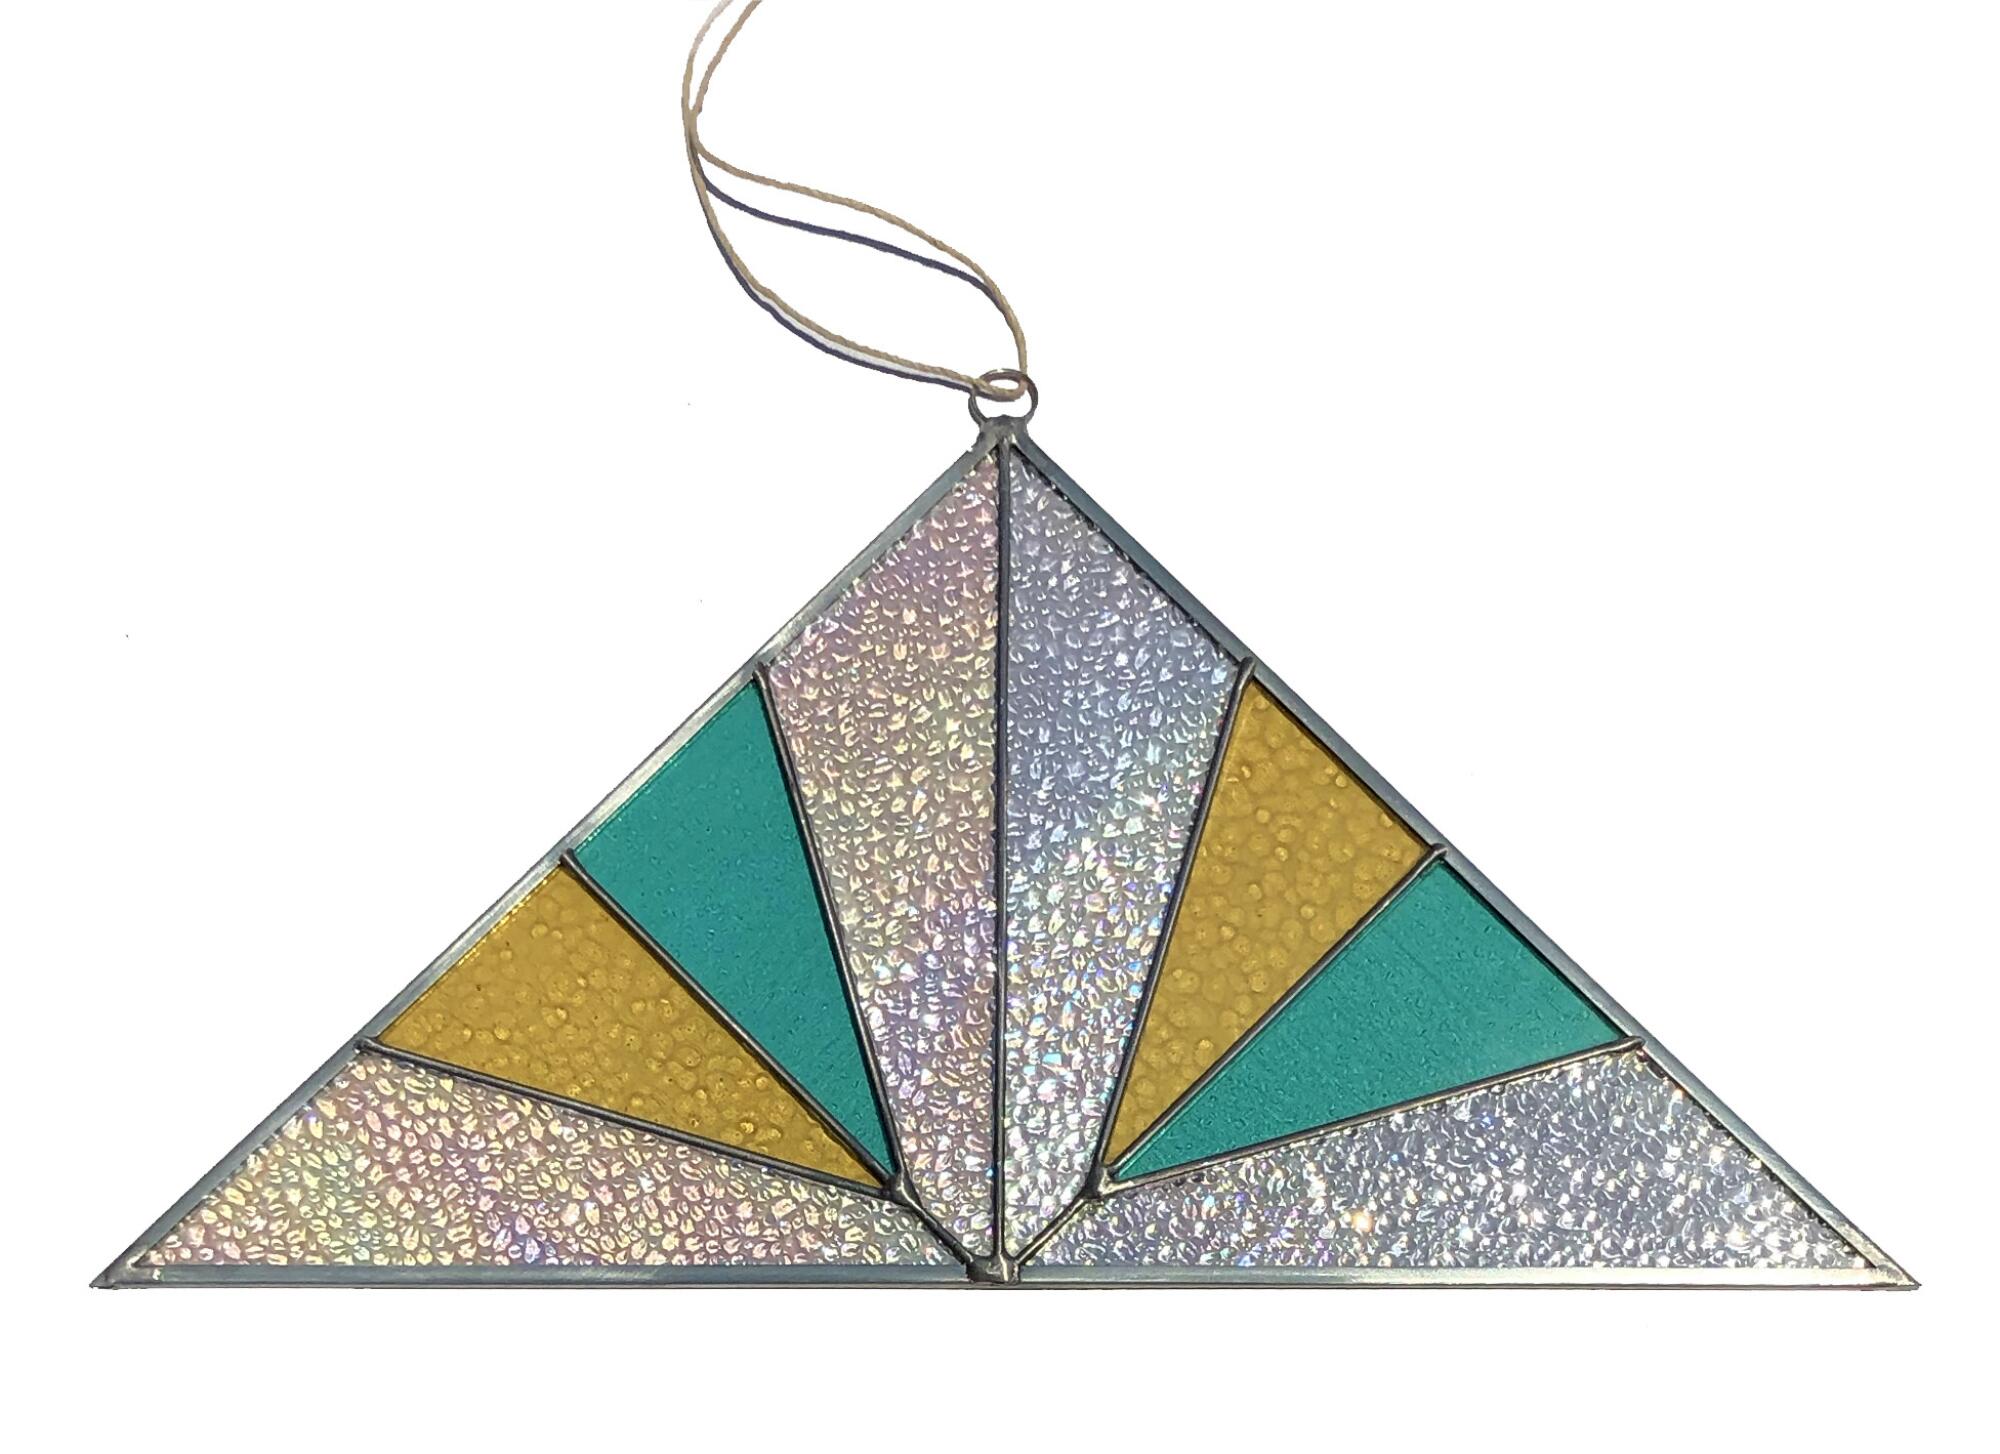 A triangular, stained-glass suncatcher.